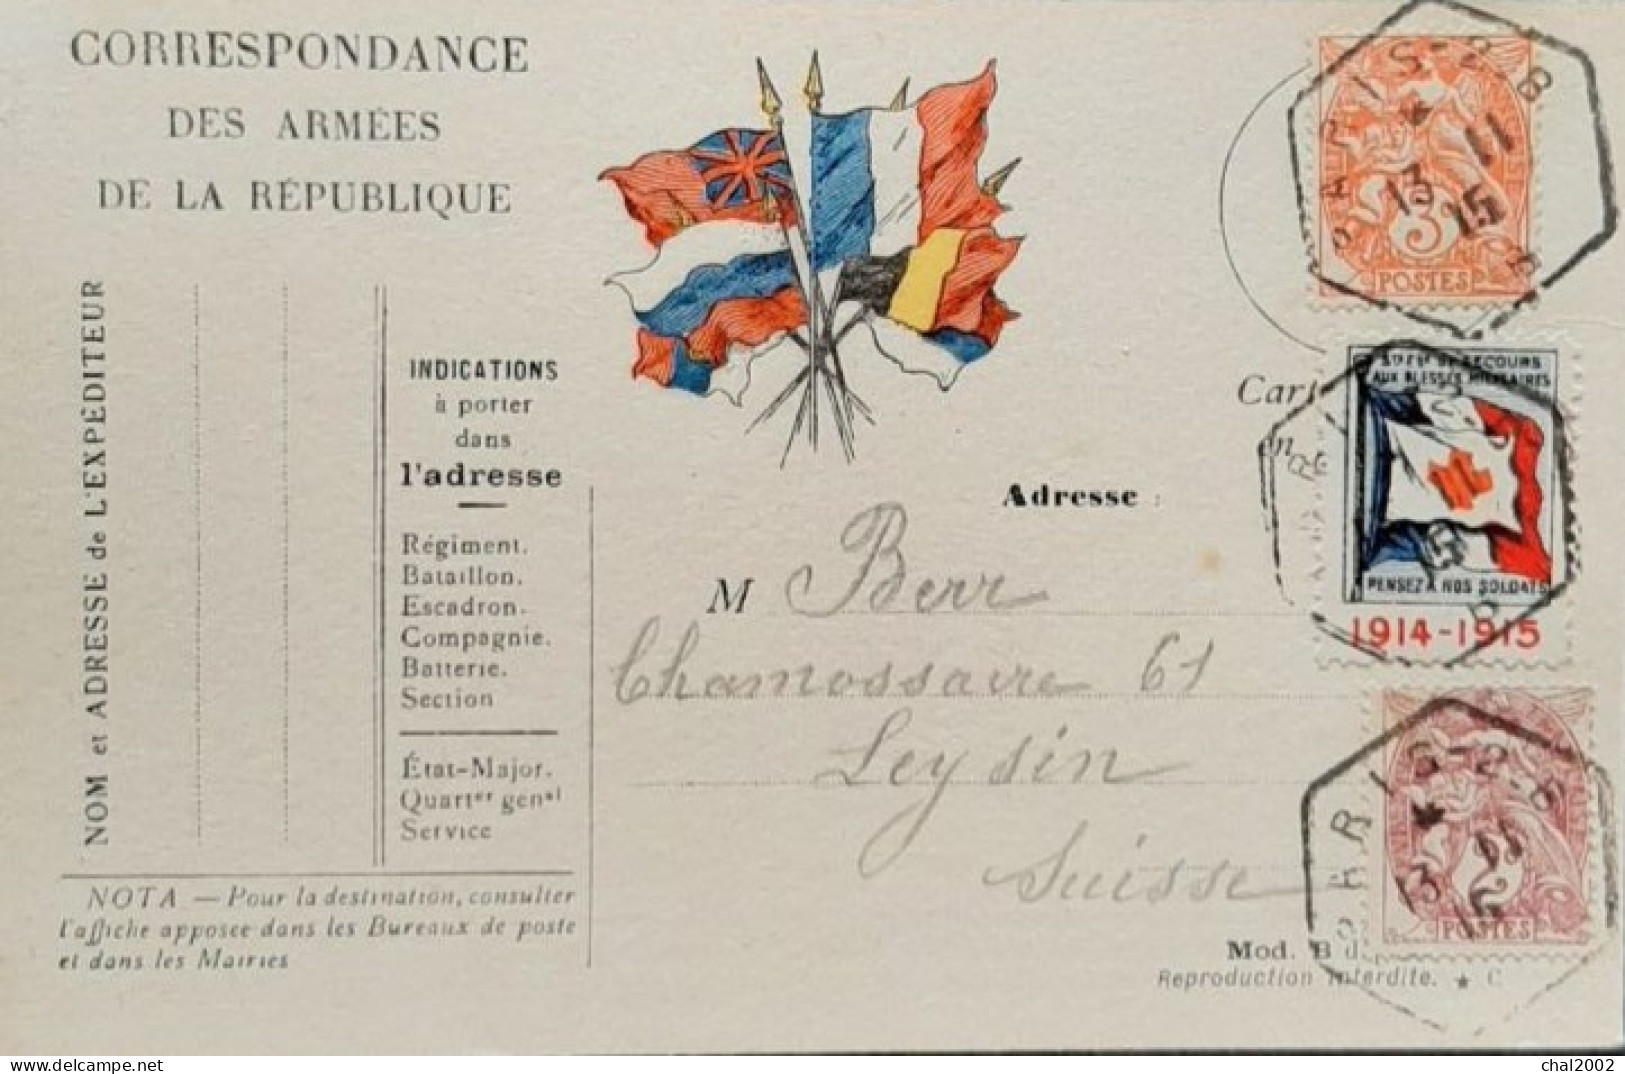 Carte Lettre De Paris 13 Novembre 1915 Pour Les Leysin  Suisse - Croix Rouge